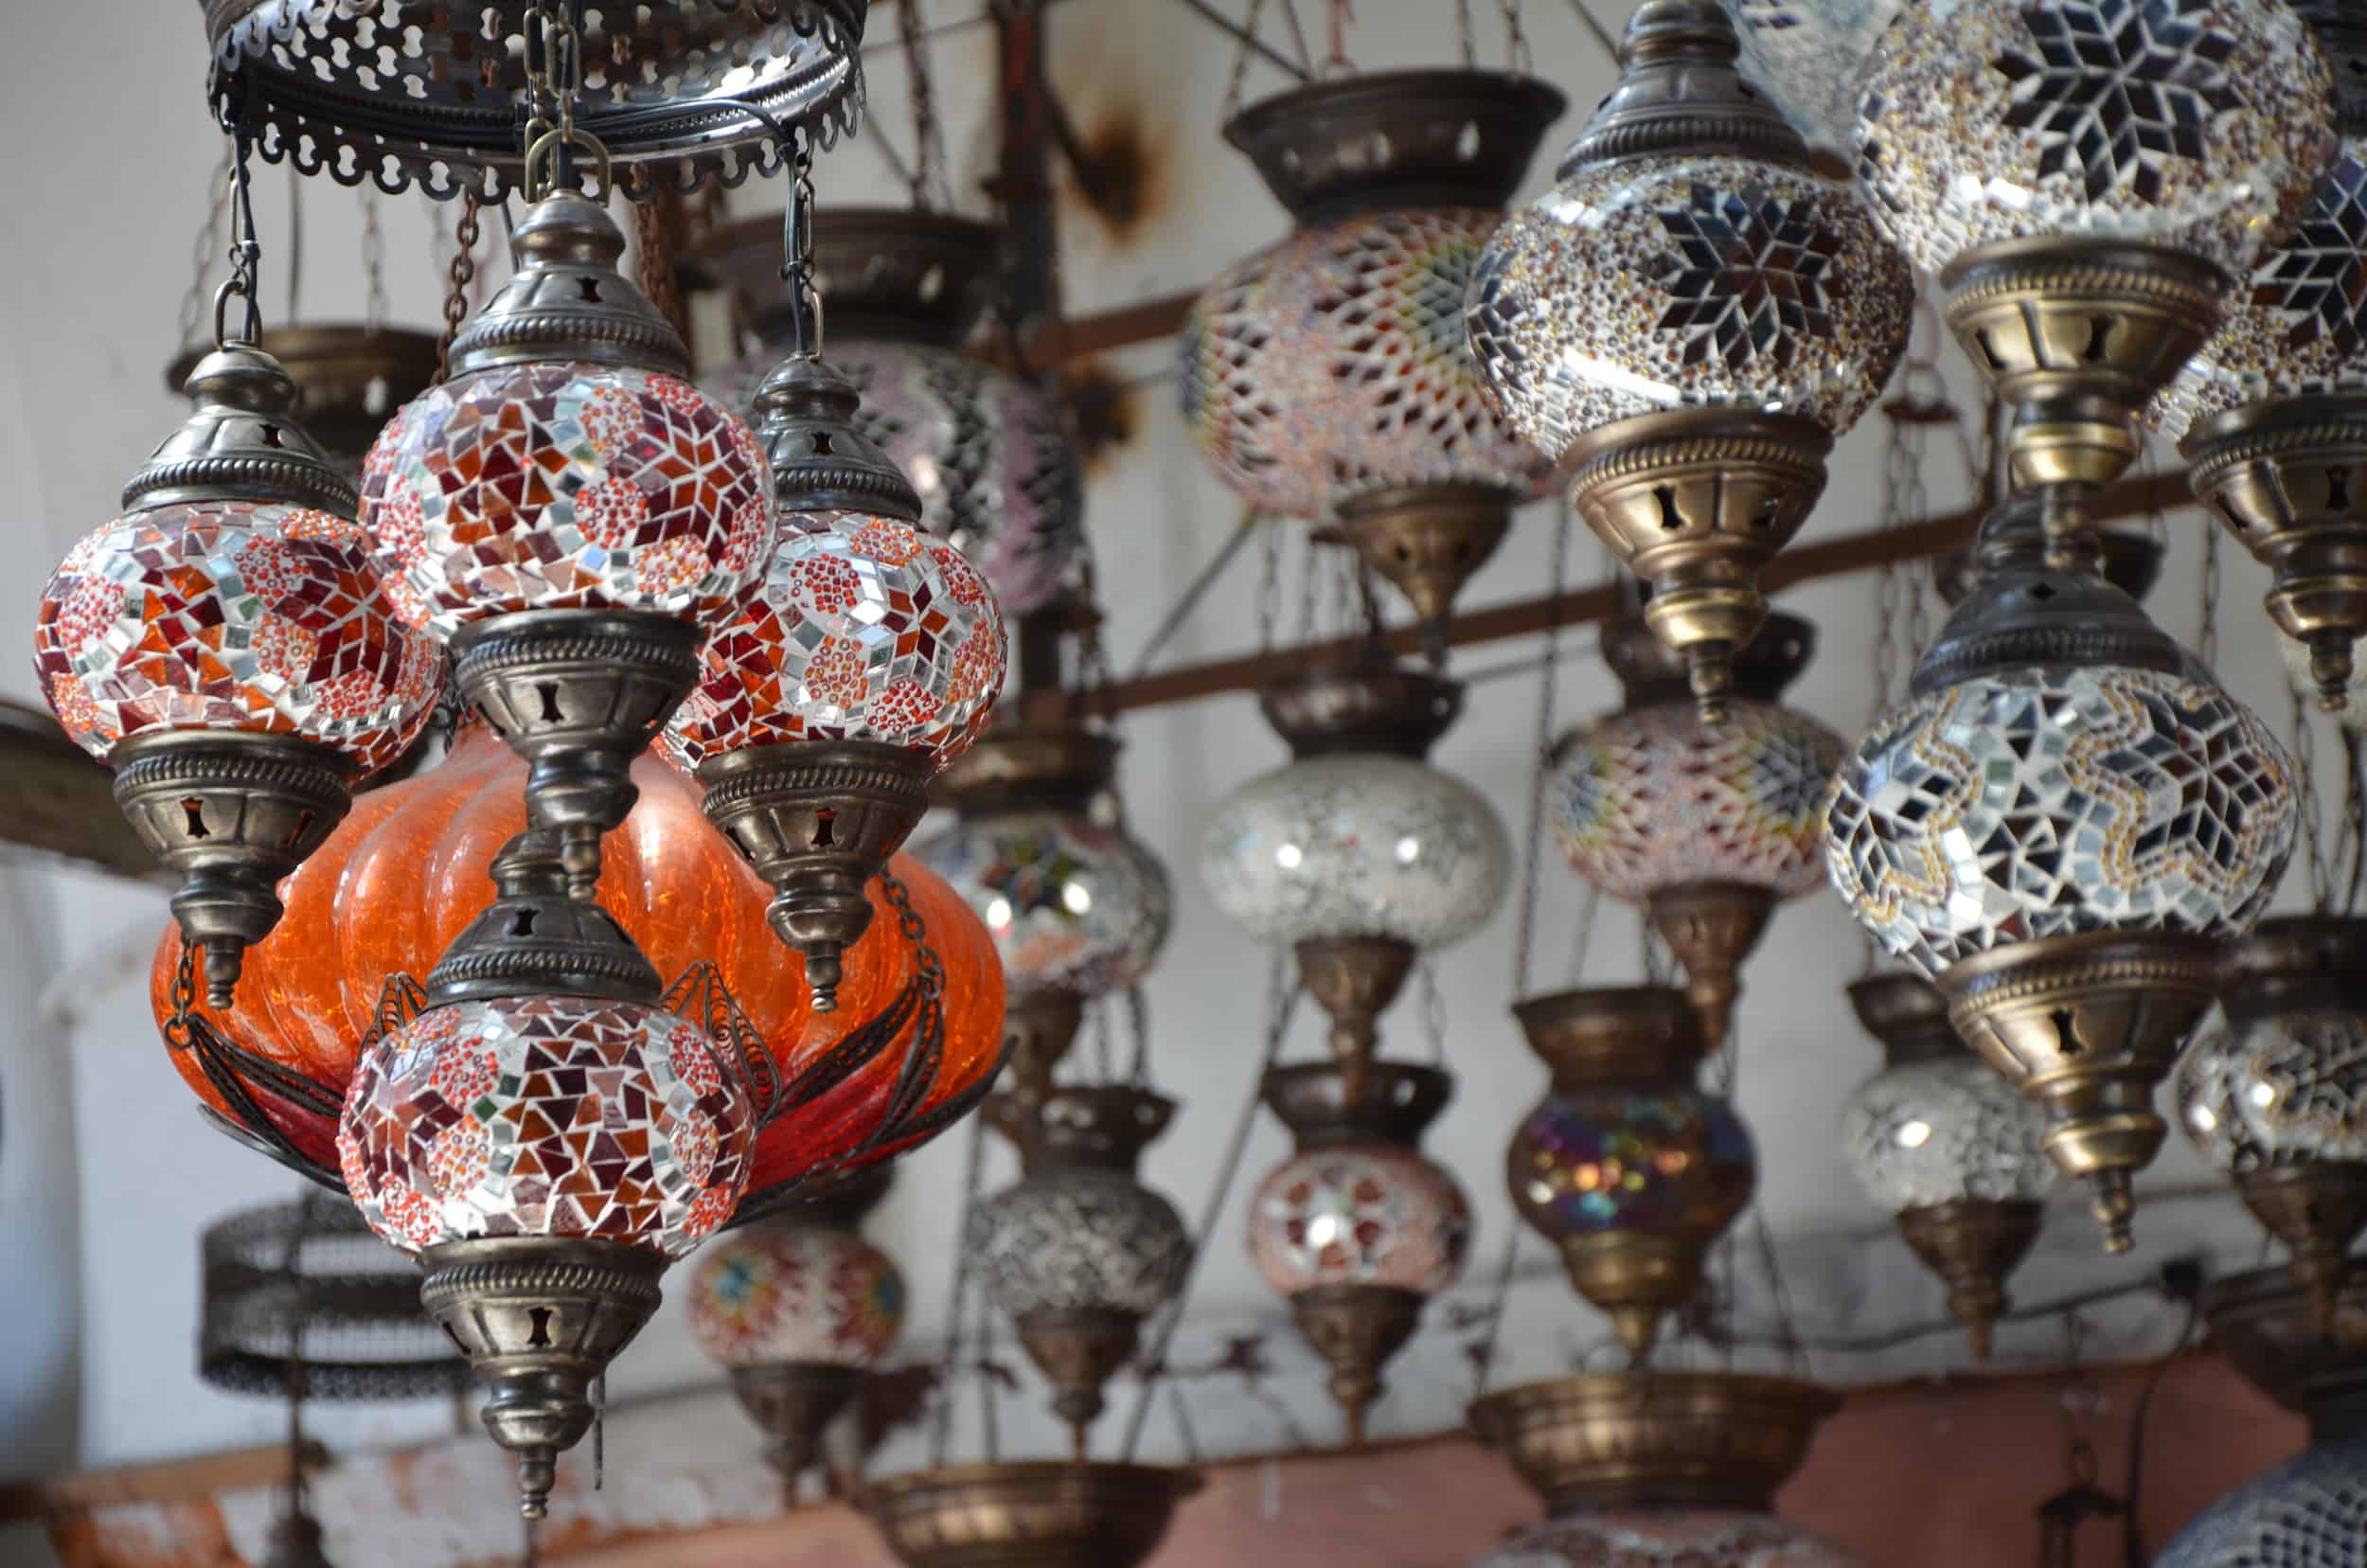 Lamps in the Çorlulu Ali Pasha Madrasa in Çemberlitaş, Istanbul, Turkey